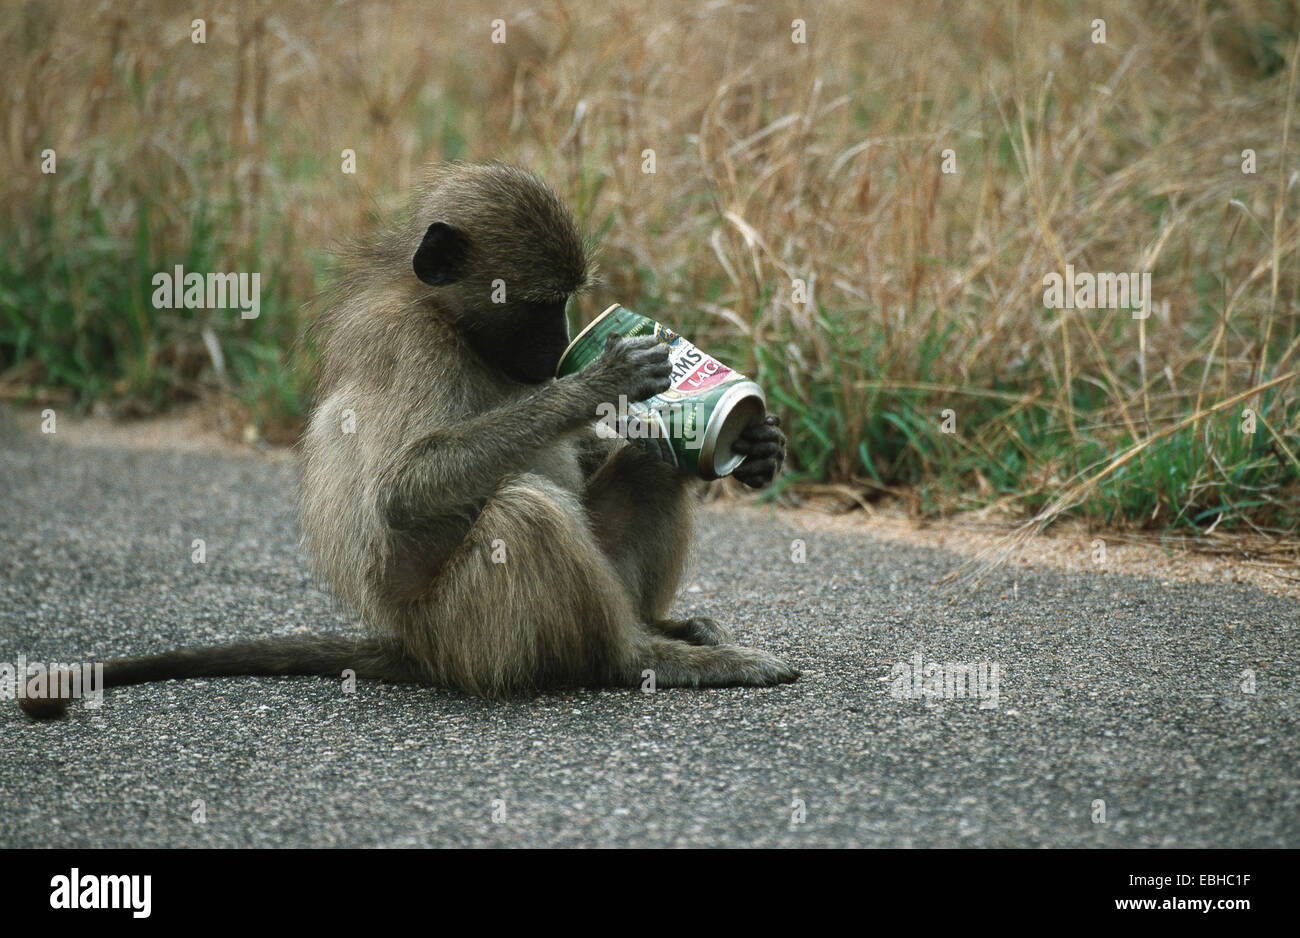 Chacma baboon (Papio ursinus), giovane, seduto sulla strada, guardando in una scatola, Okt 01. Foto Stock